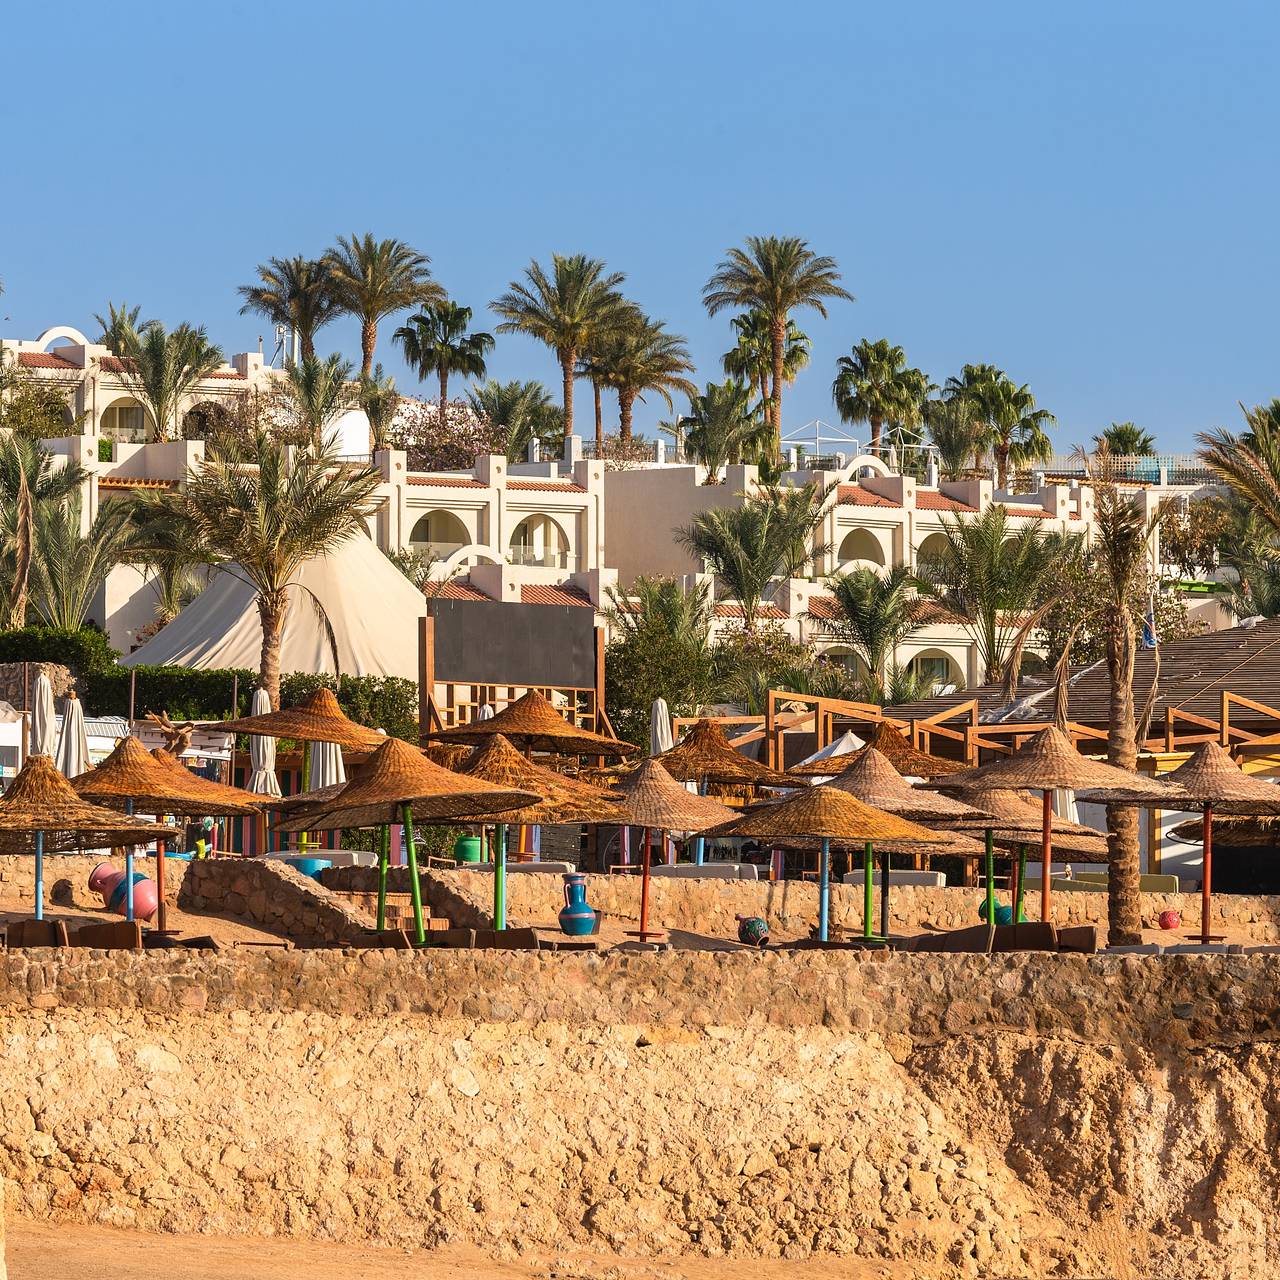 Отзыв туриста - Молодежный отель.. Египет, Набк-Бэй, Rehana Sharm Resort 4*. Написано 